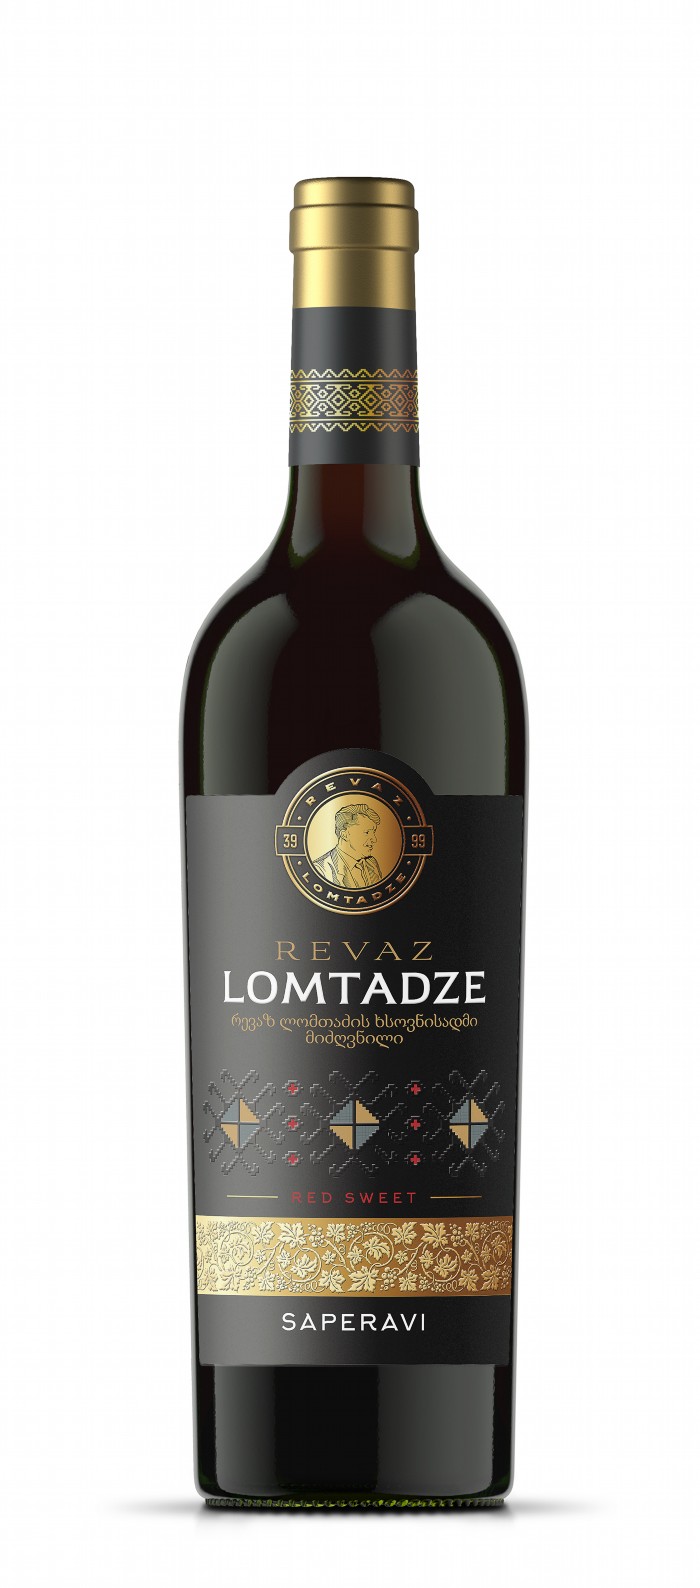 Lomtadze - Rotwein "Saperavi", süß